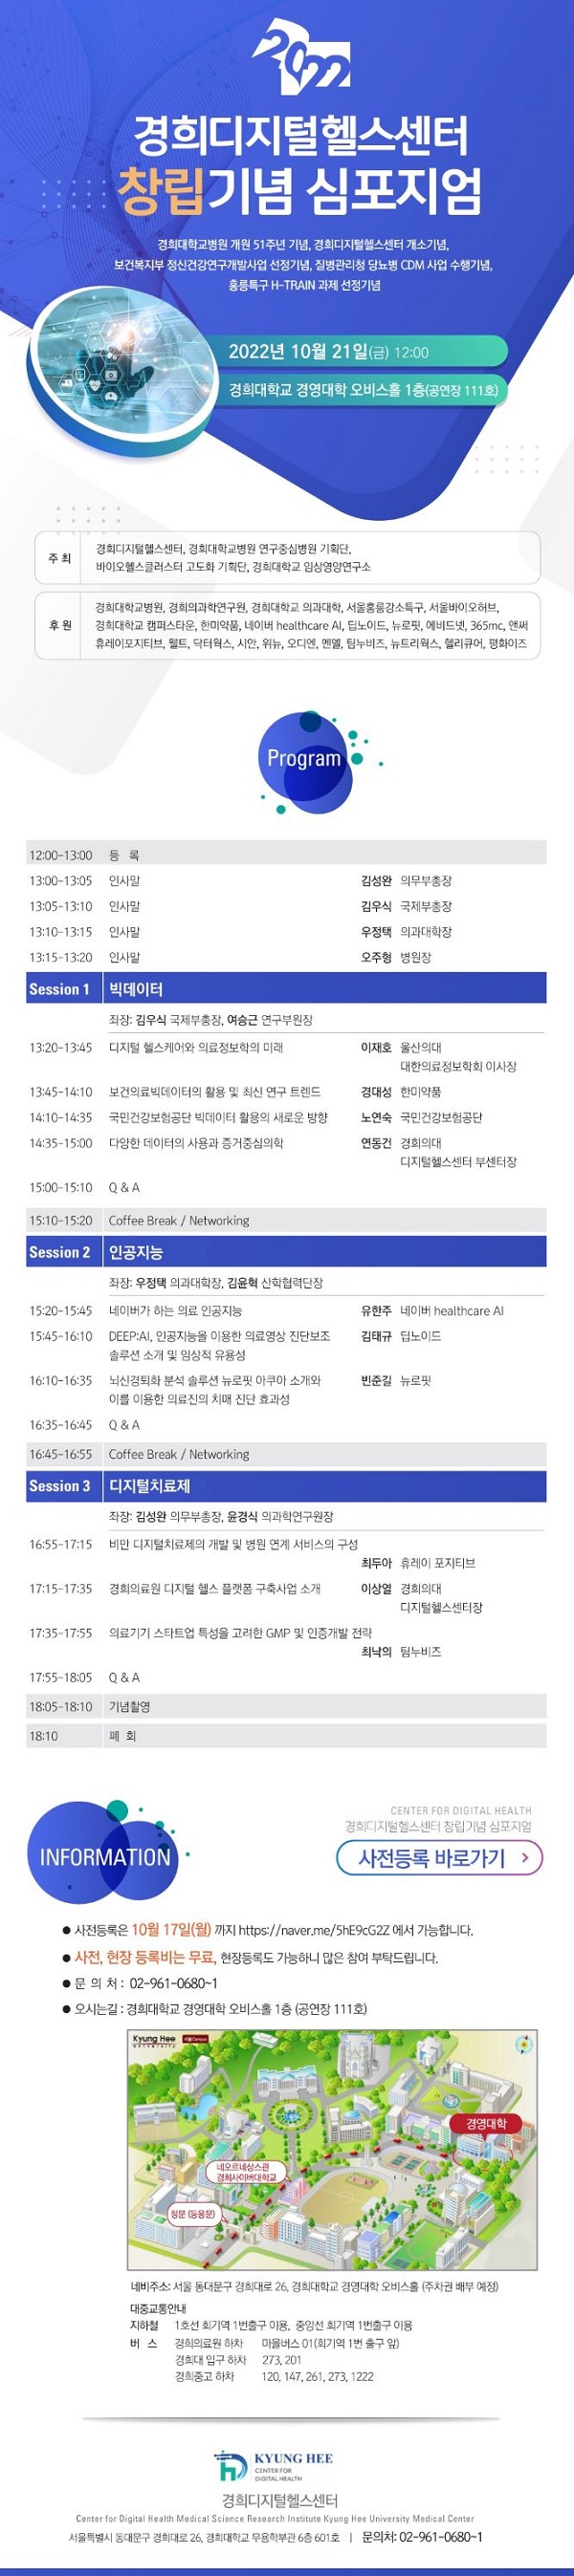 [행사]경희의과학연구원 경희디지털헬스센터, 21일 창립기념 심포지엄 개최 